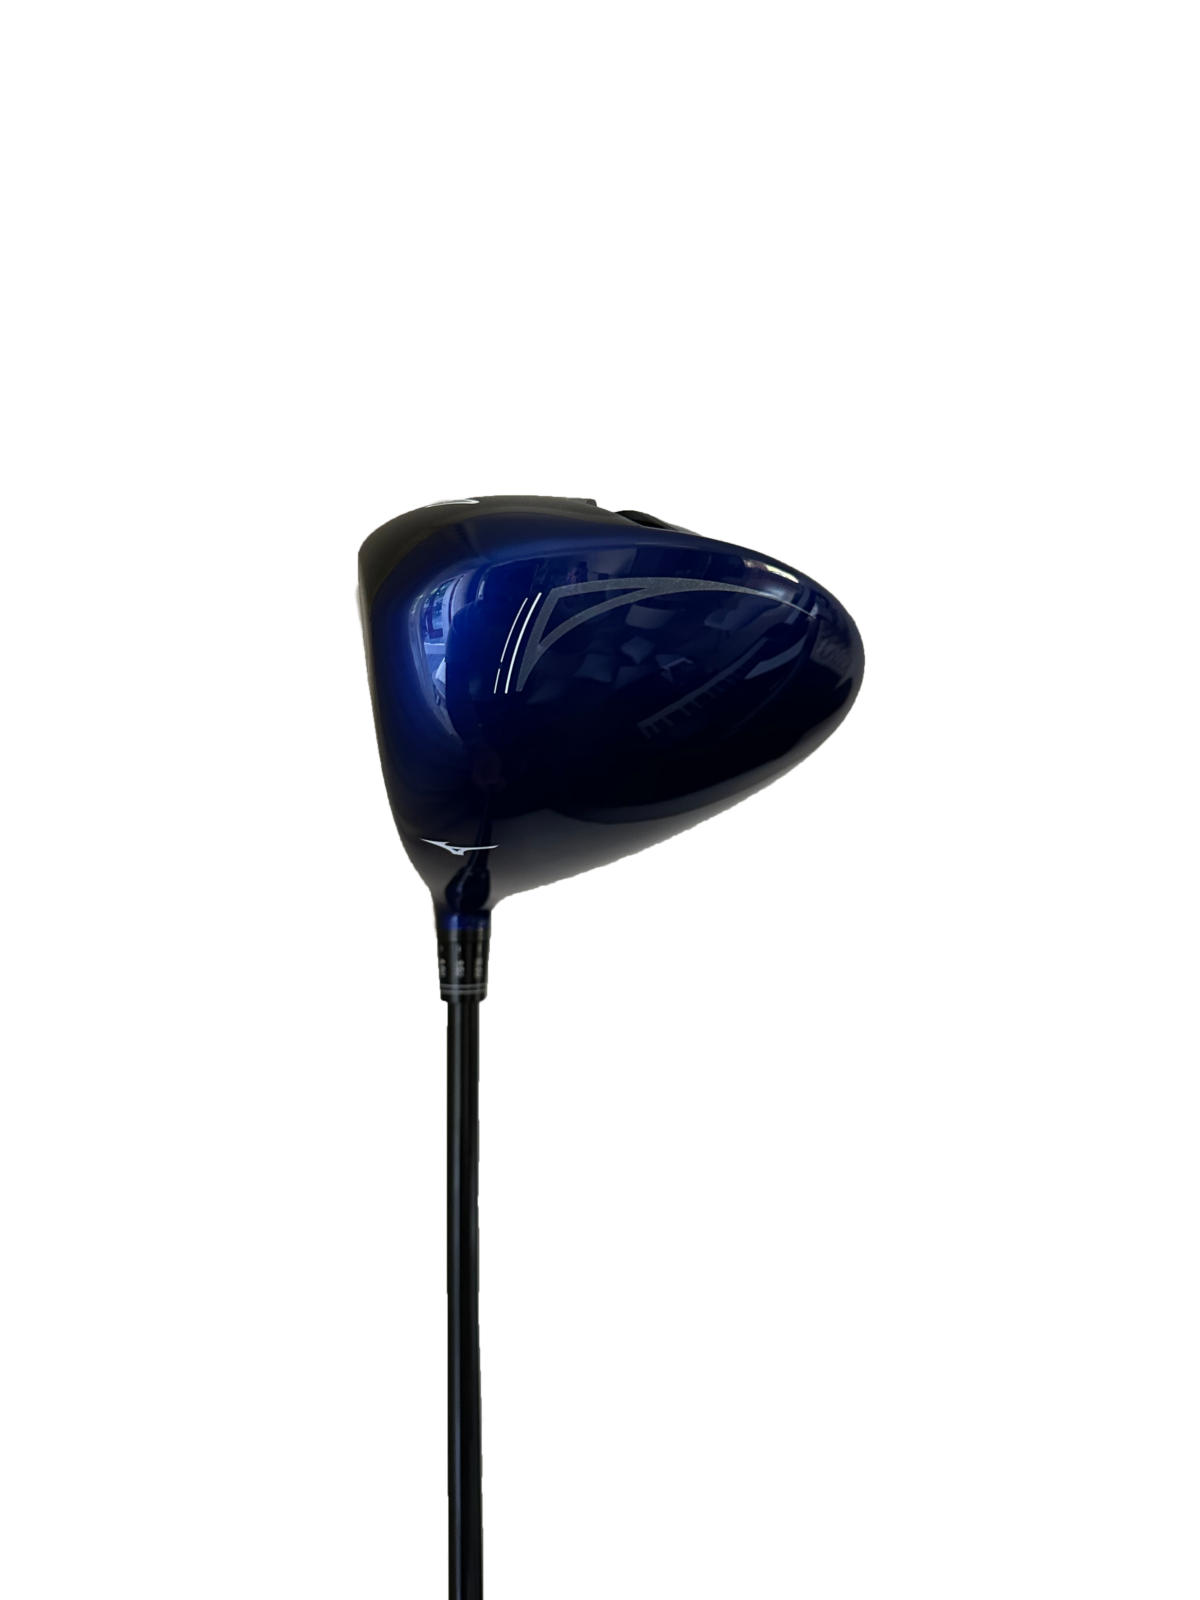 John Block Golf - Mizuno JPX 850 Blauw